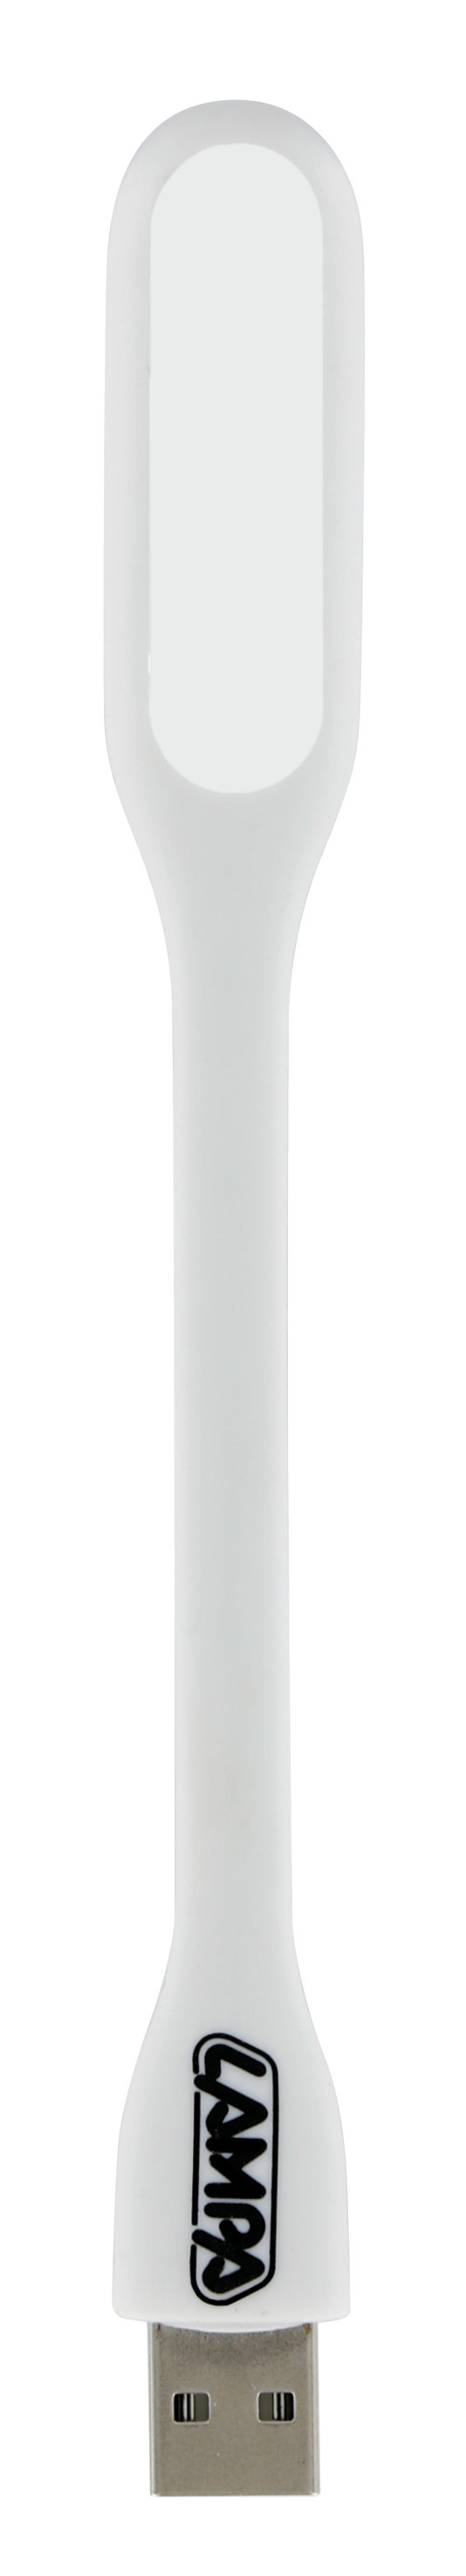 COB-LED flexible light 5V USB thumb